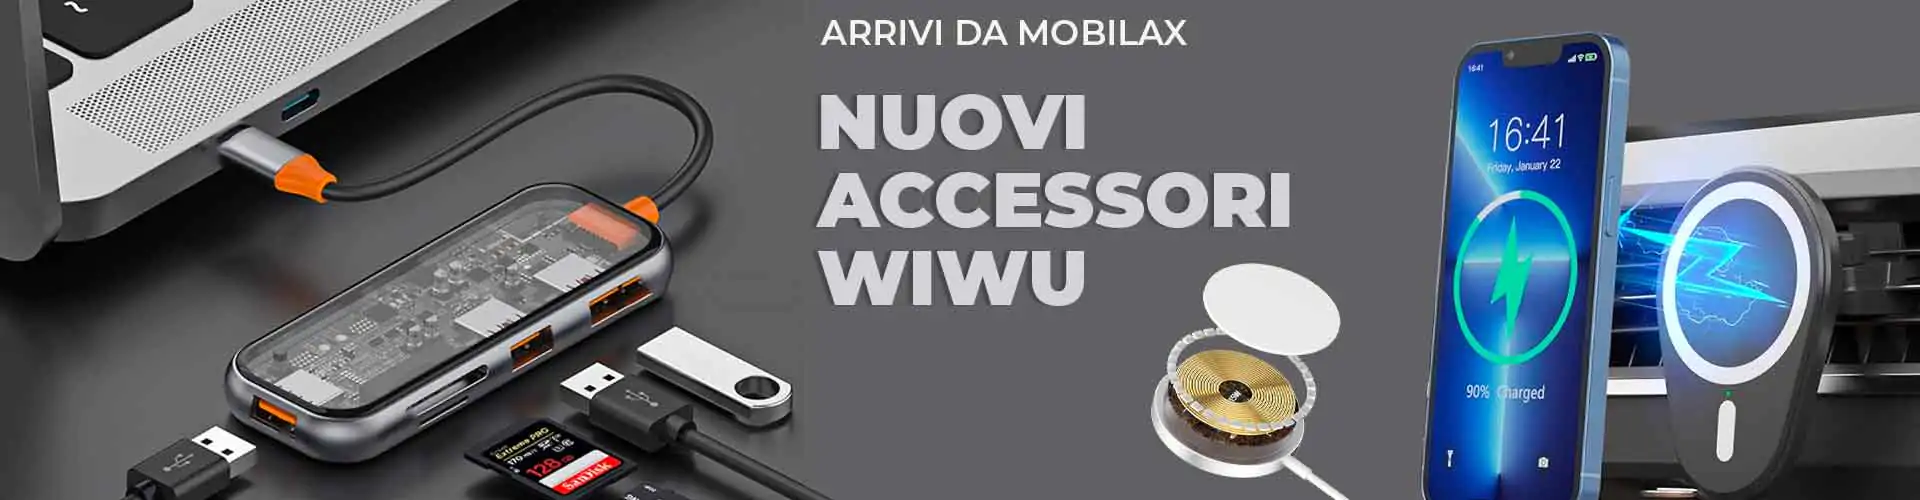 nuovi accessori wiwu